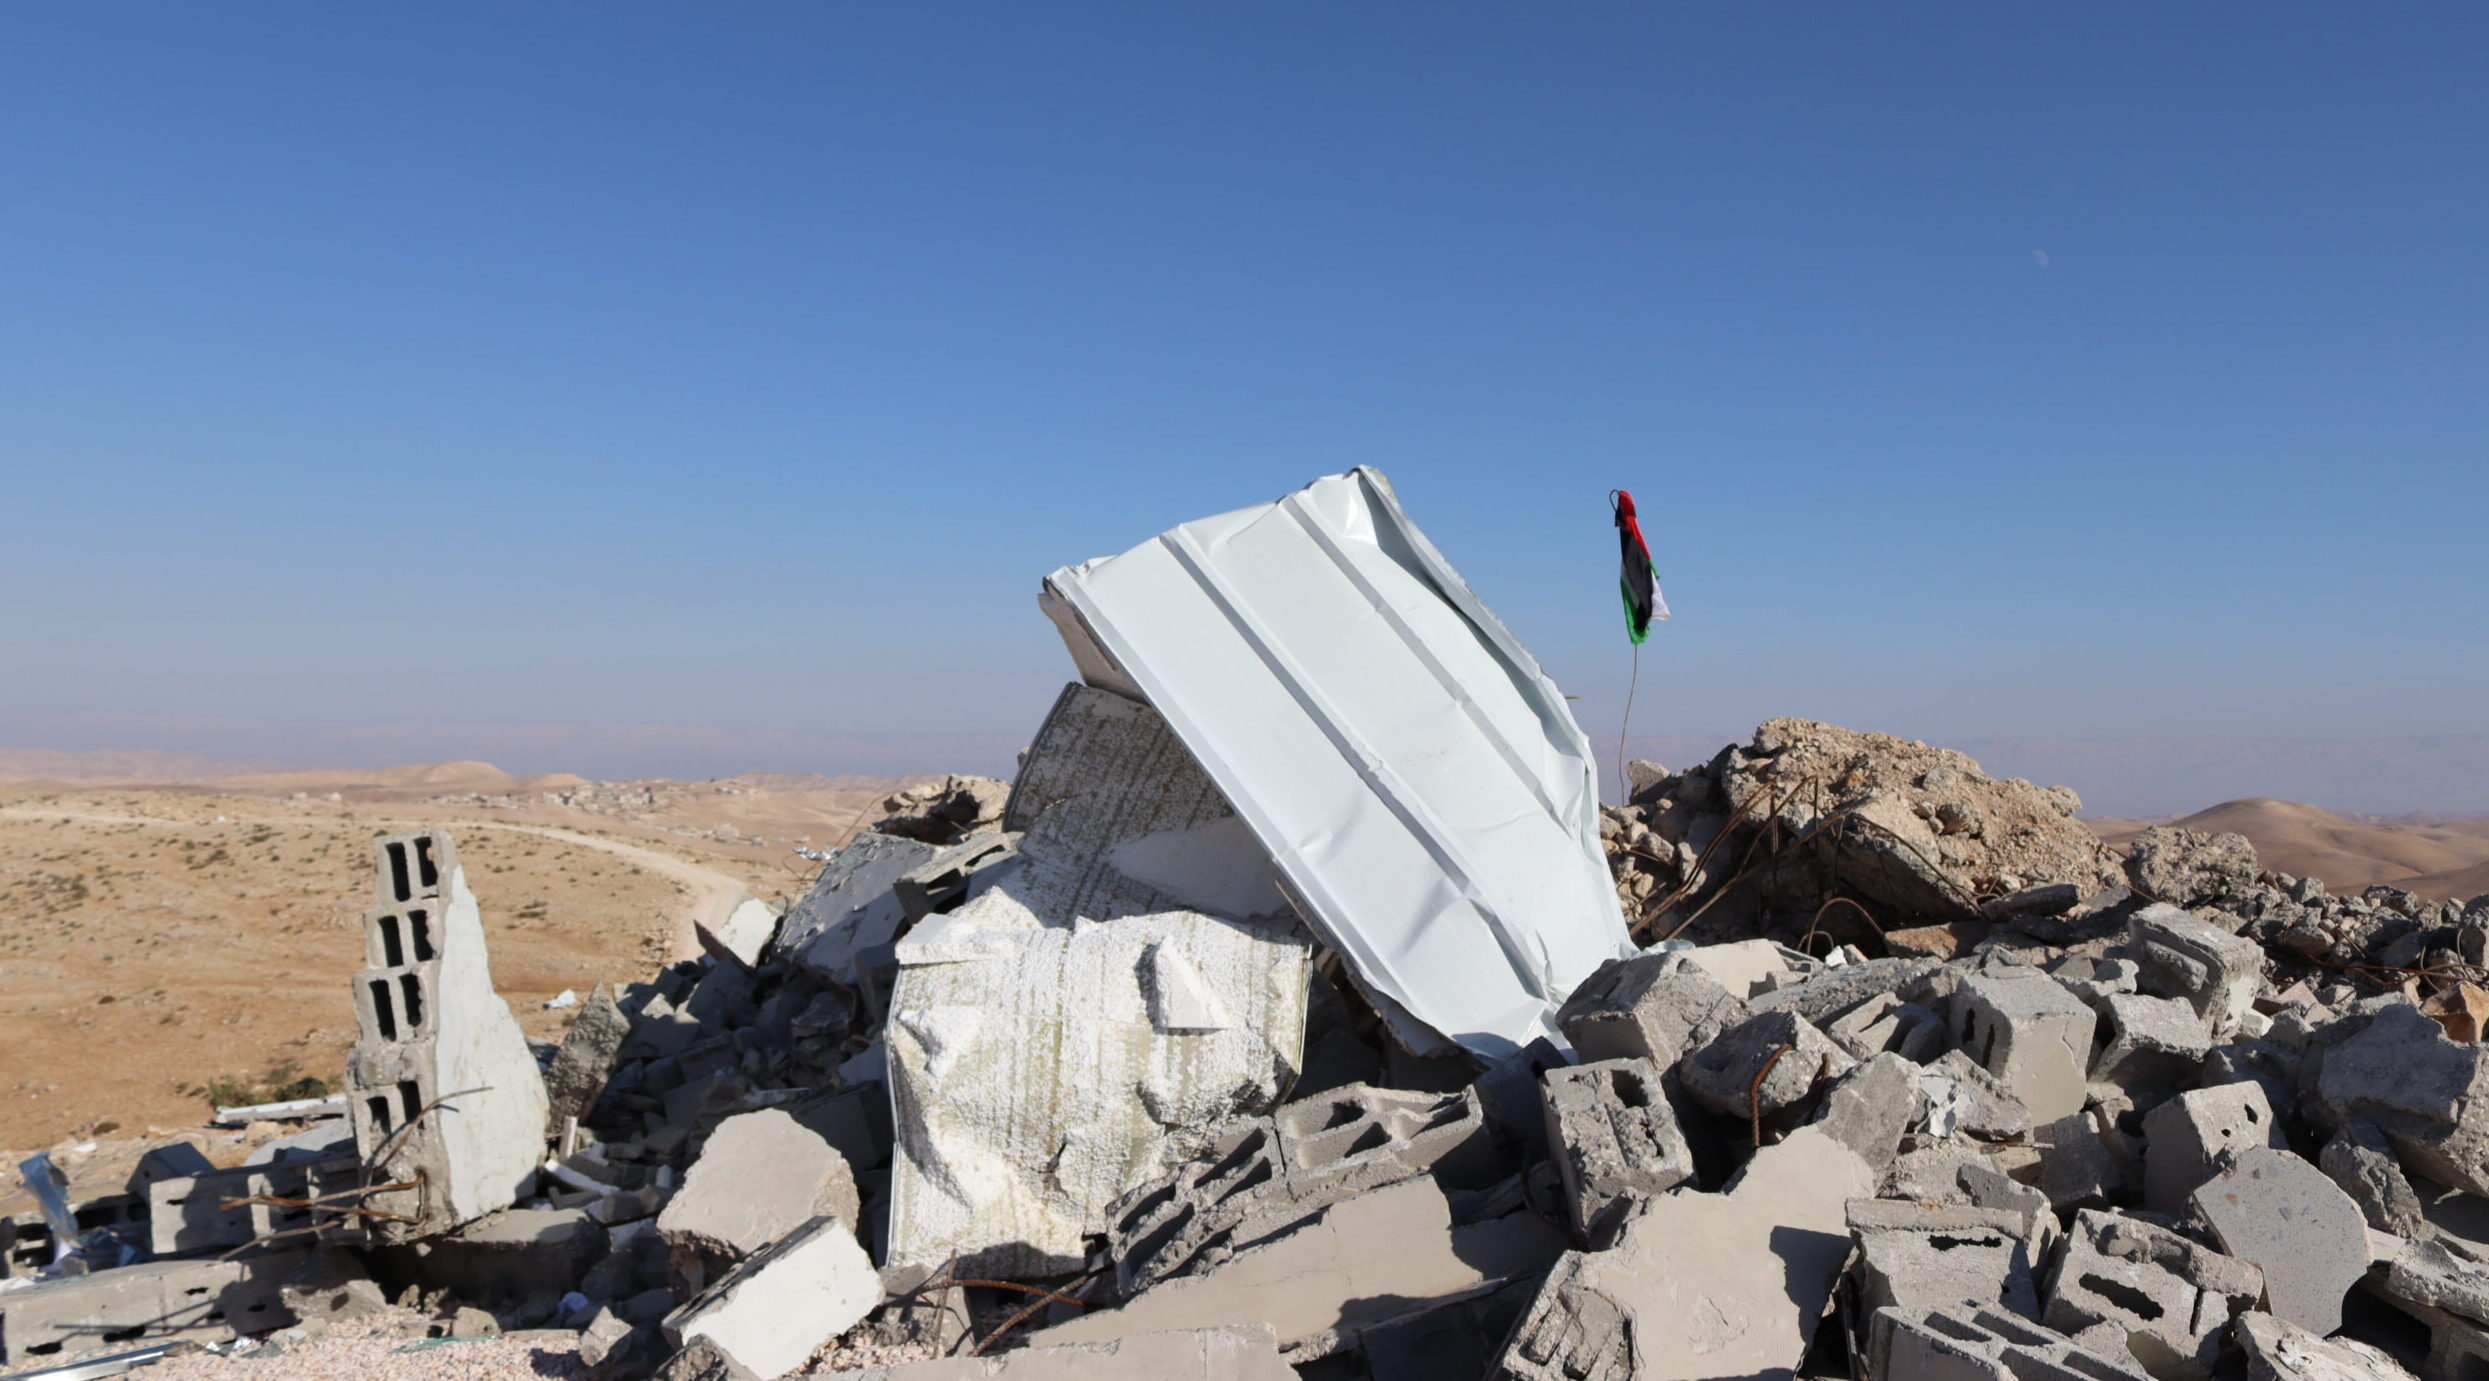 La scuola costruita in Cisgiordania con i soldi della cooperazione distrutta dall'esercito israeliano